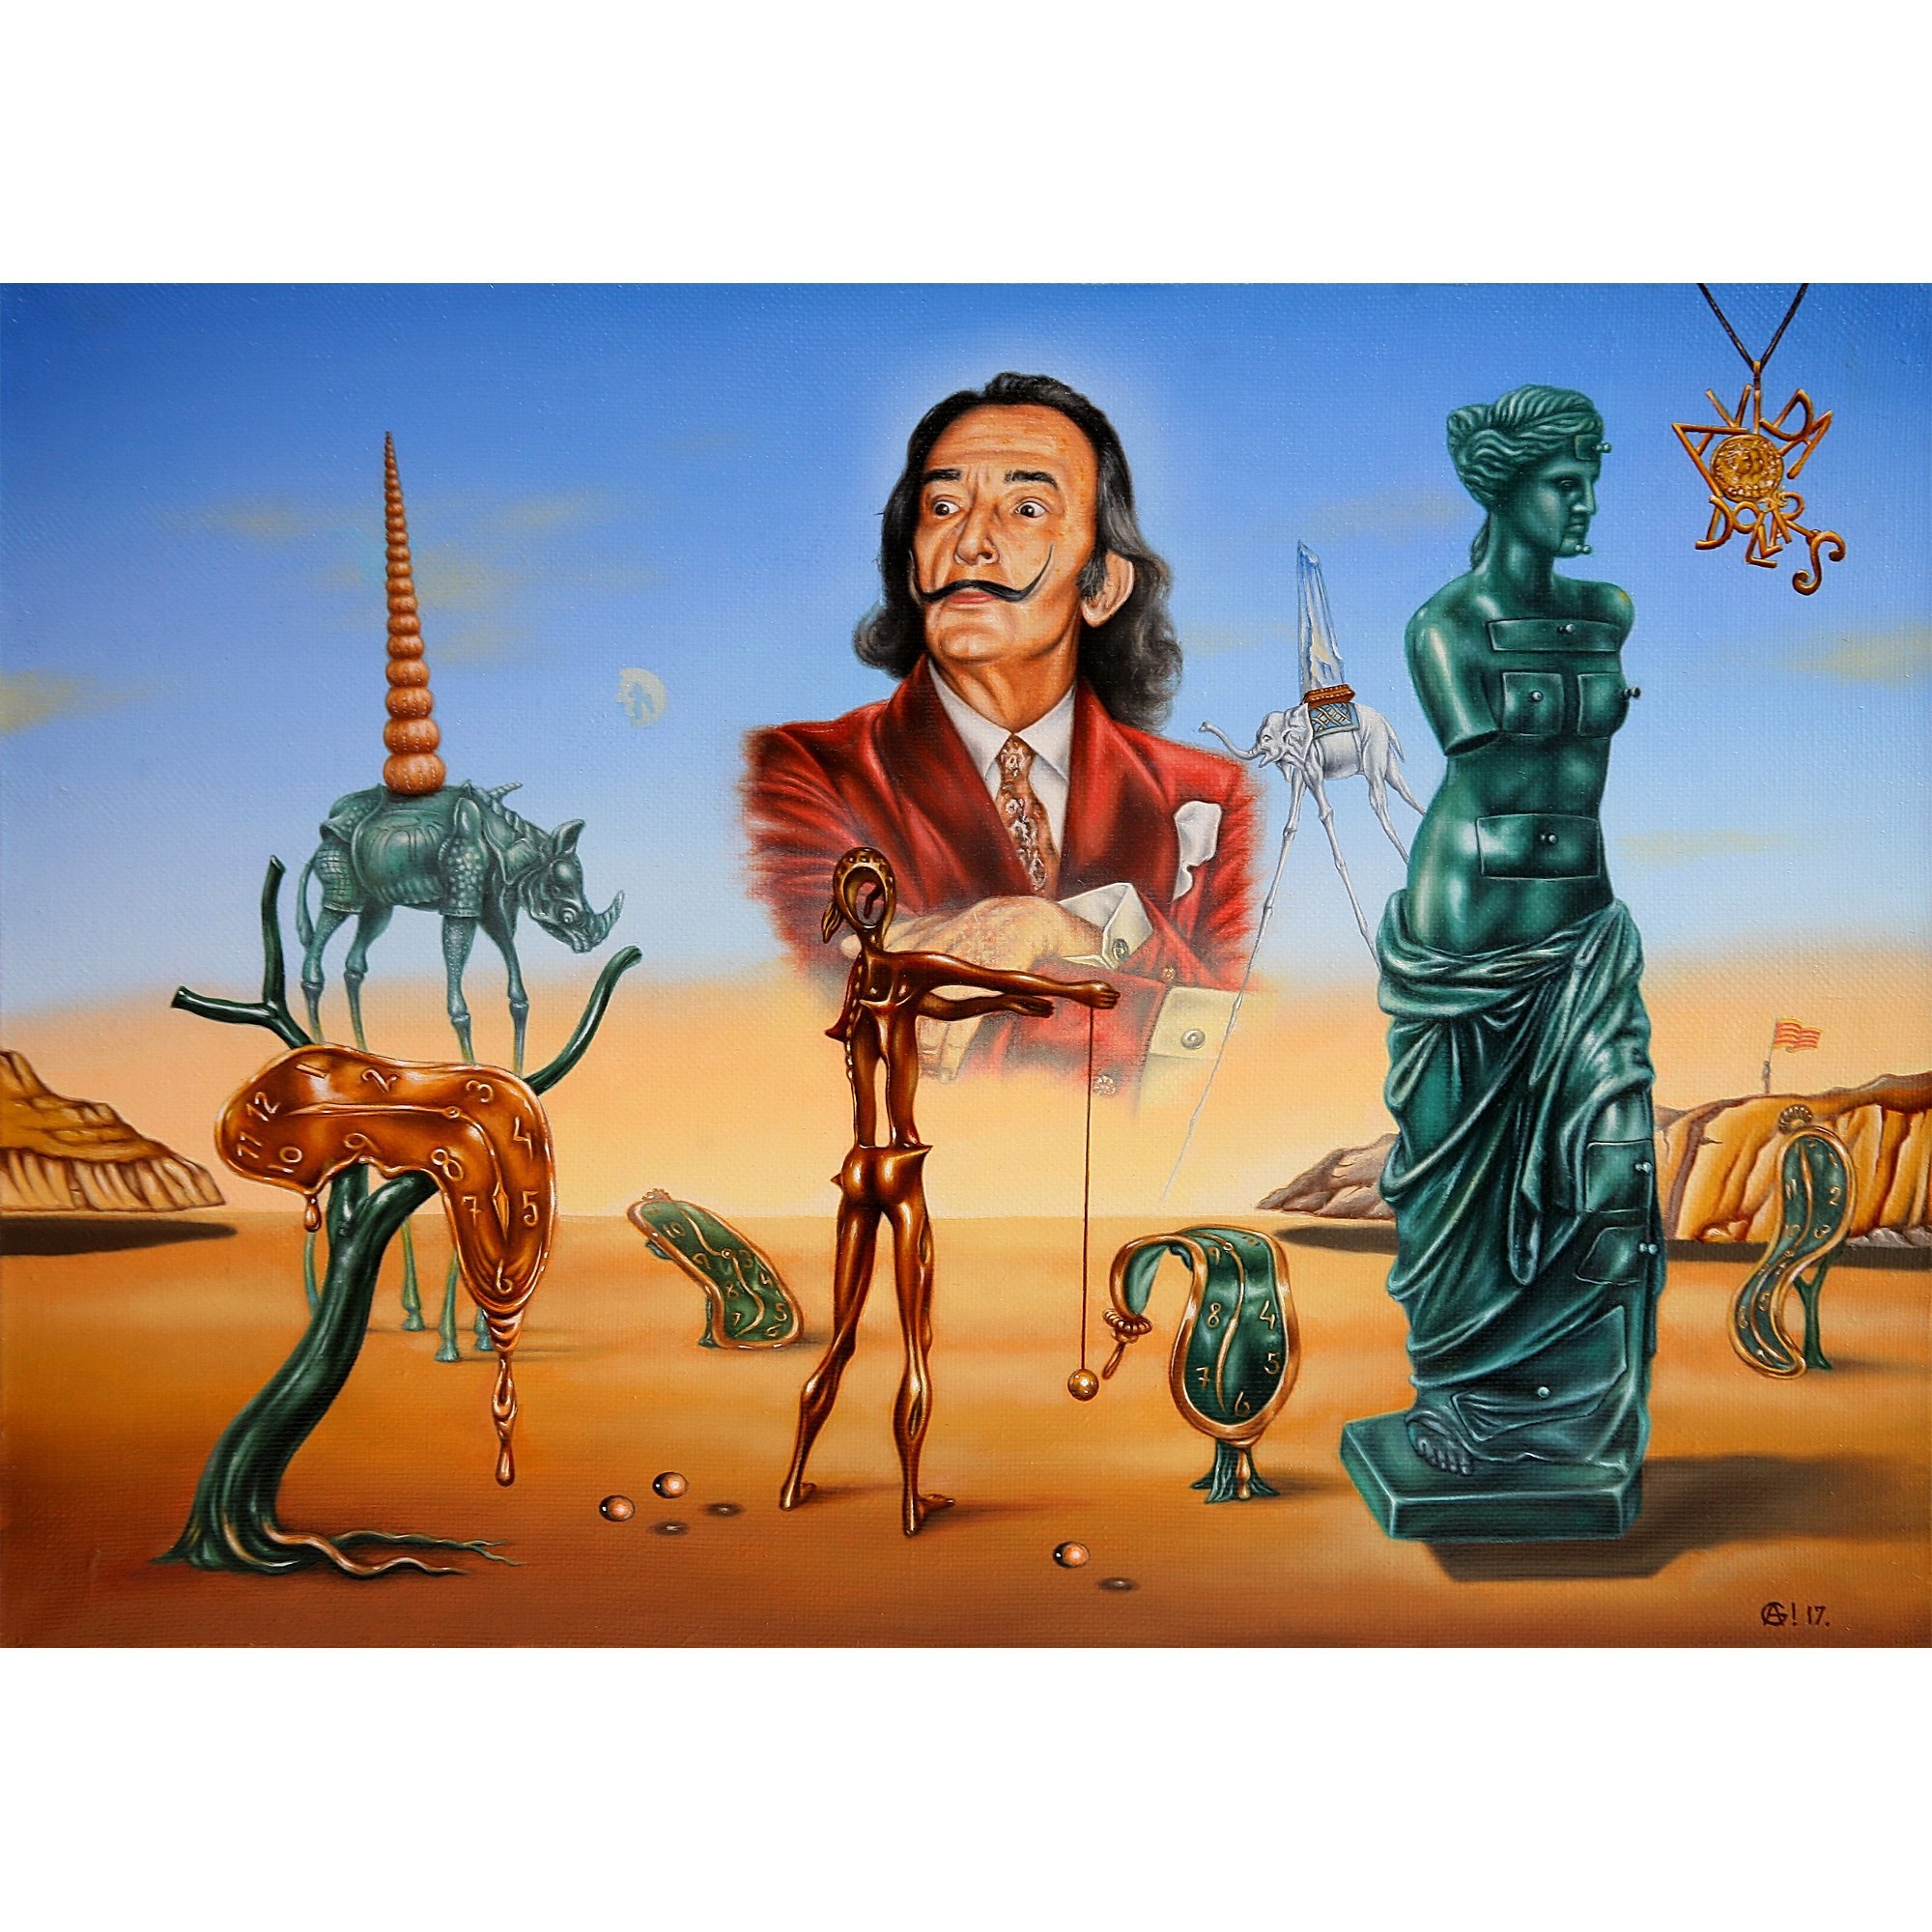 Сальвадор дали теле. Salvador Dali картины. Salvador Dalí картины. Сальвадор дали картины самые известные. Dali Salvador Сальвадор дали картины.